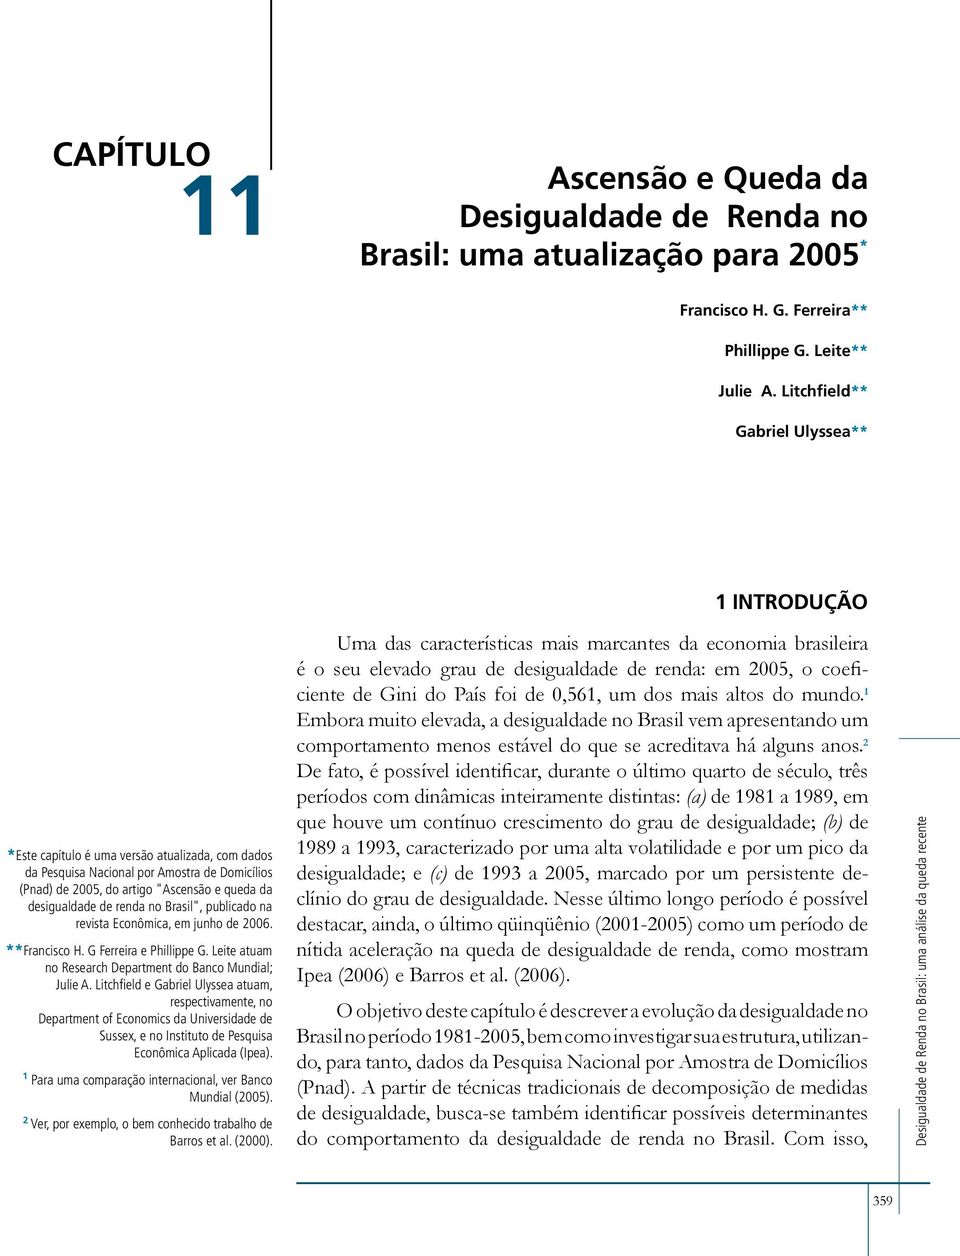 desigualdade de renda no Brasil", publicado na revista Econômica, em junho de 2006. **Francisco H. G Ferreira e Phillippe G. Leite atuam no Research Department do Banco Mundial; Julie A.